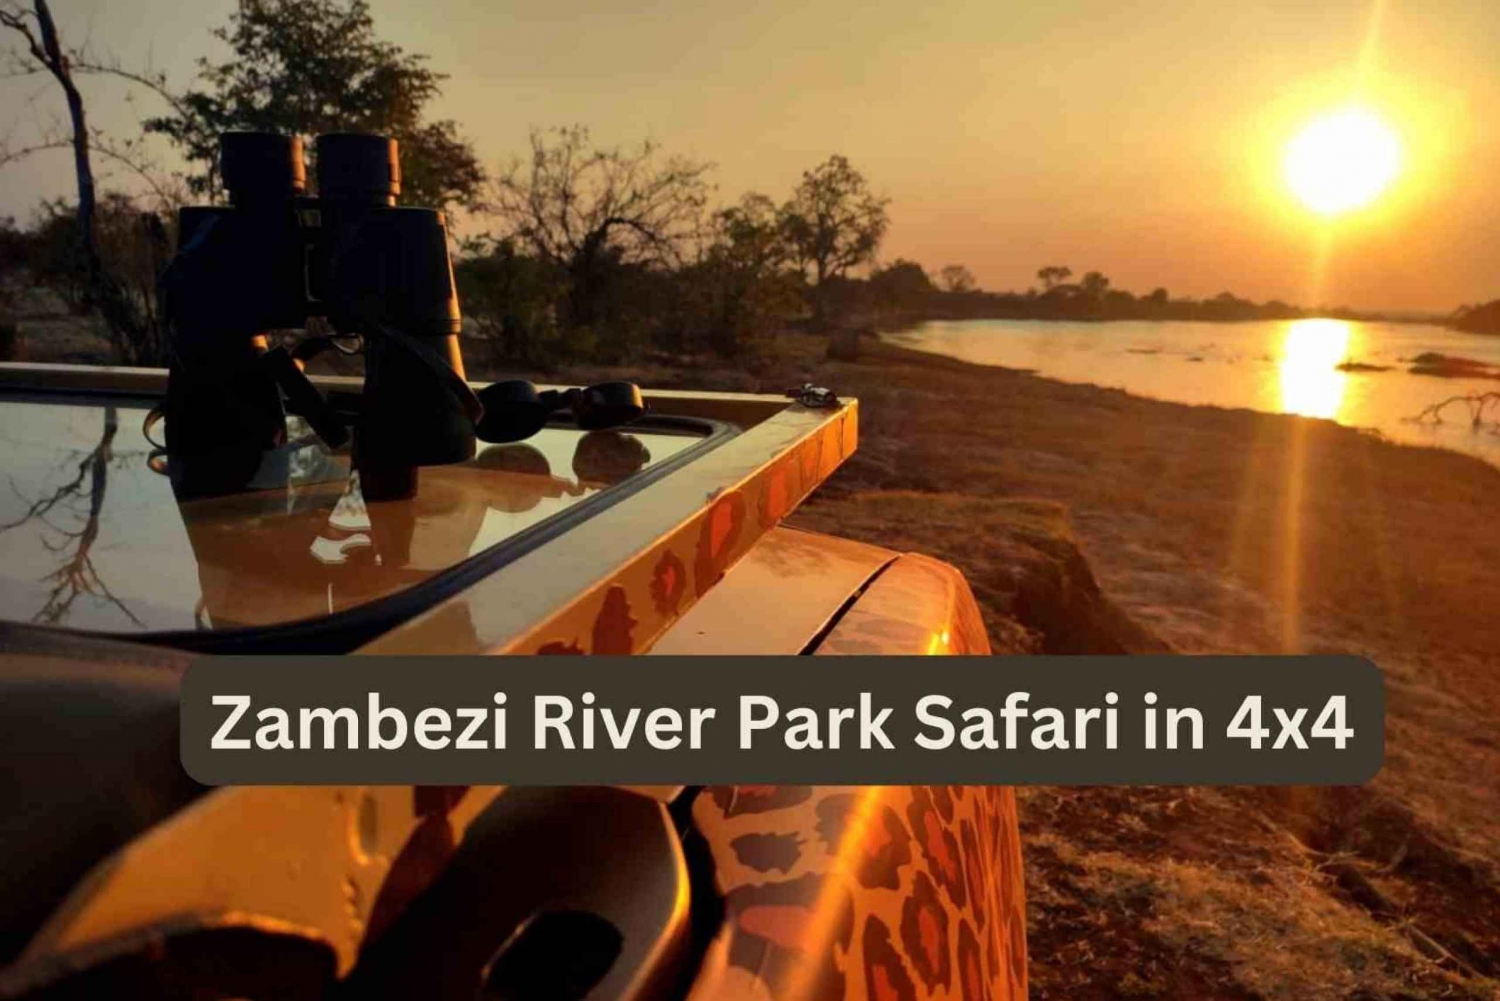 Victoria Falls: 4x4 Zambezi River Safari